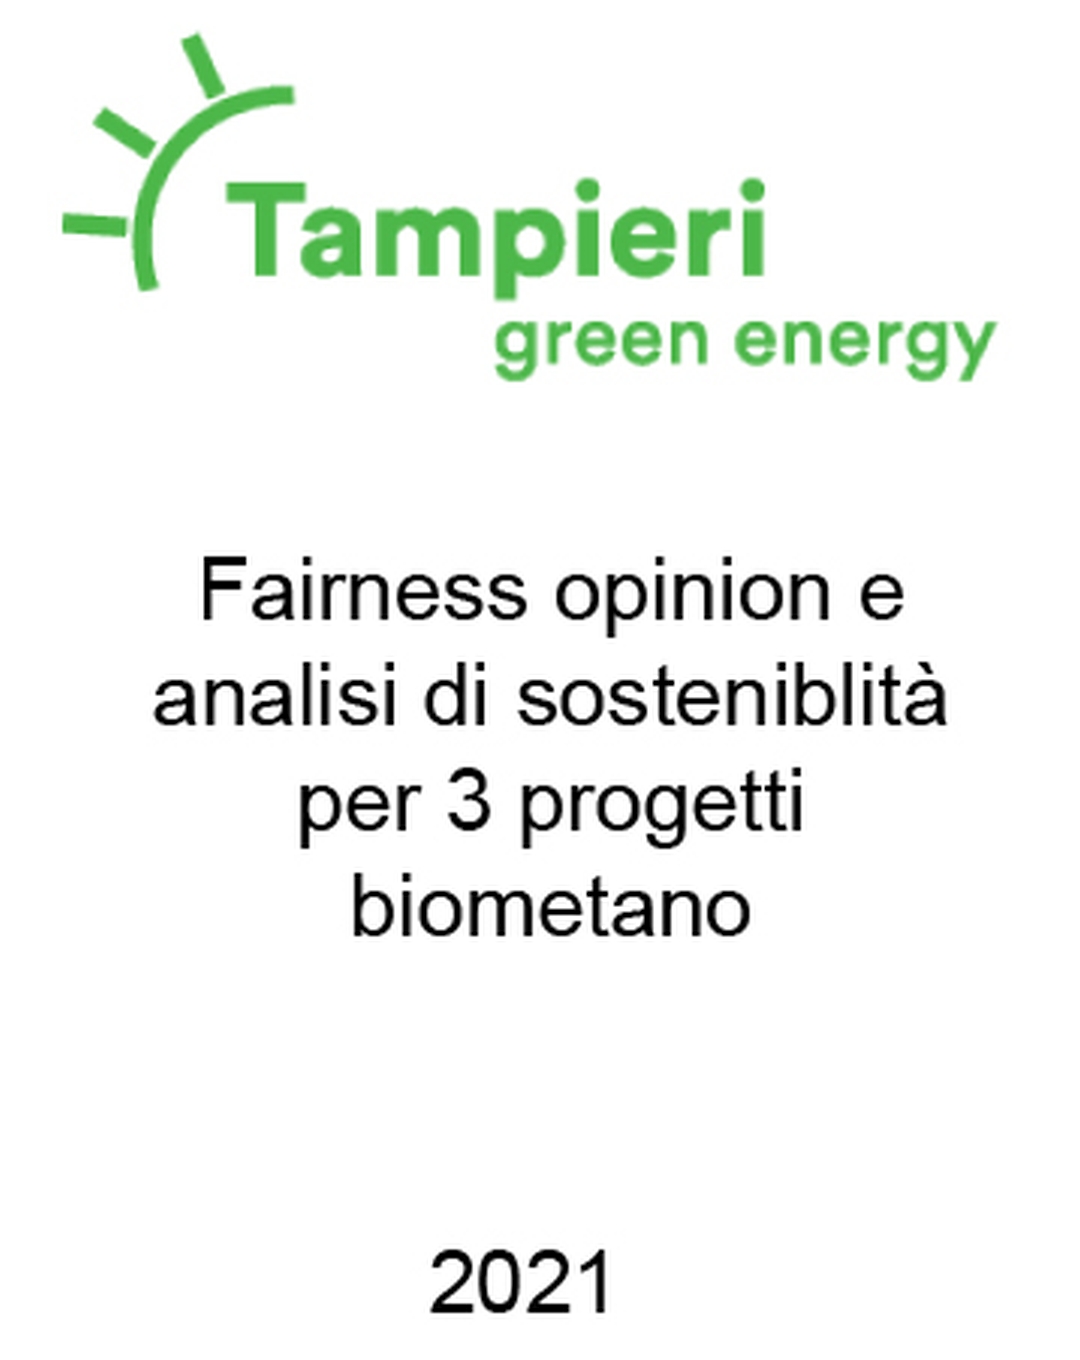 Consulente di Tampieri Group nella verifica della fattibilità e pianificazione finanziaria per una pipeline di progetti di biometano greenfield. Incarico completato nel 2021.